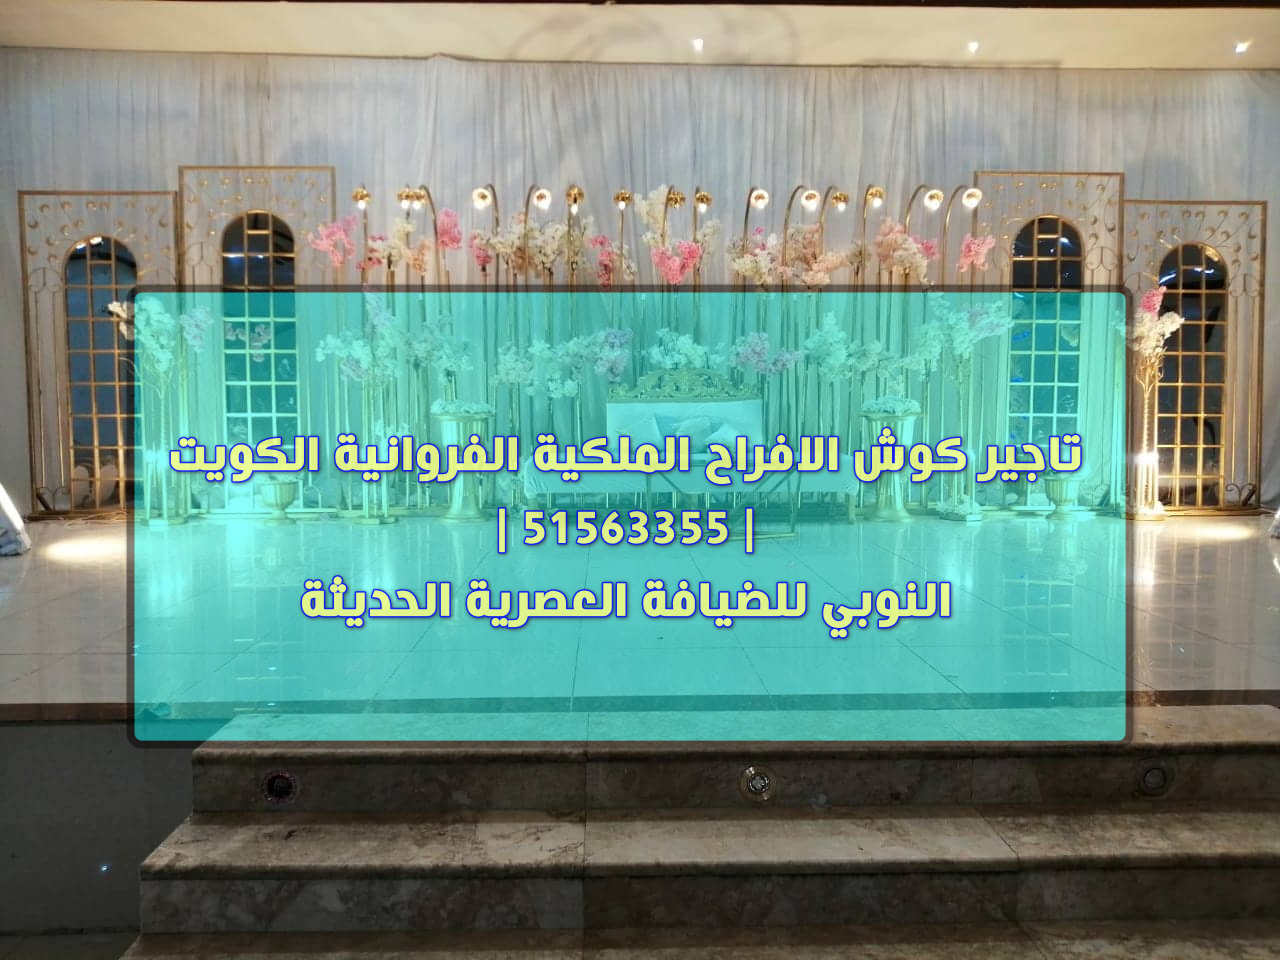 تاجير كوش الافراح الملكية الفروانية الكويت 51563355 النوبي للضيافة العصرية الحديثة